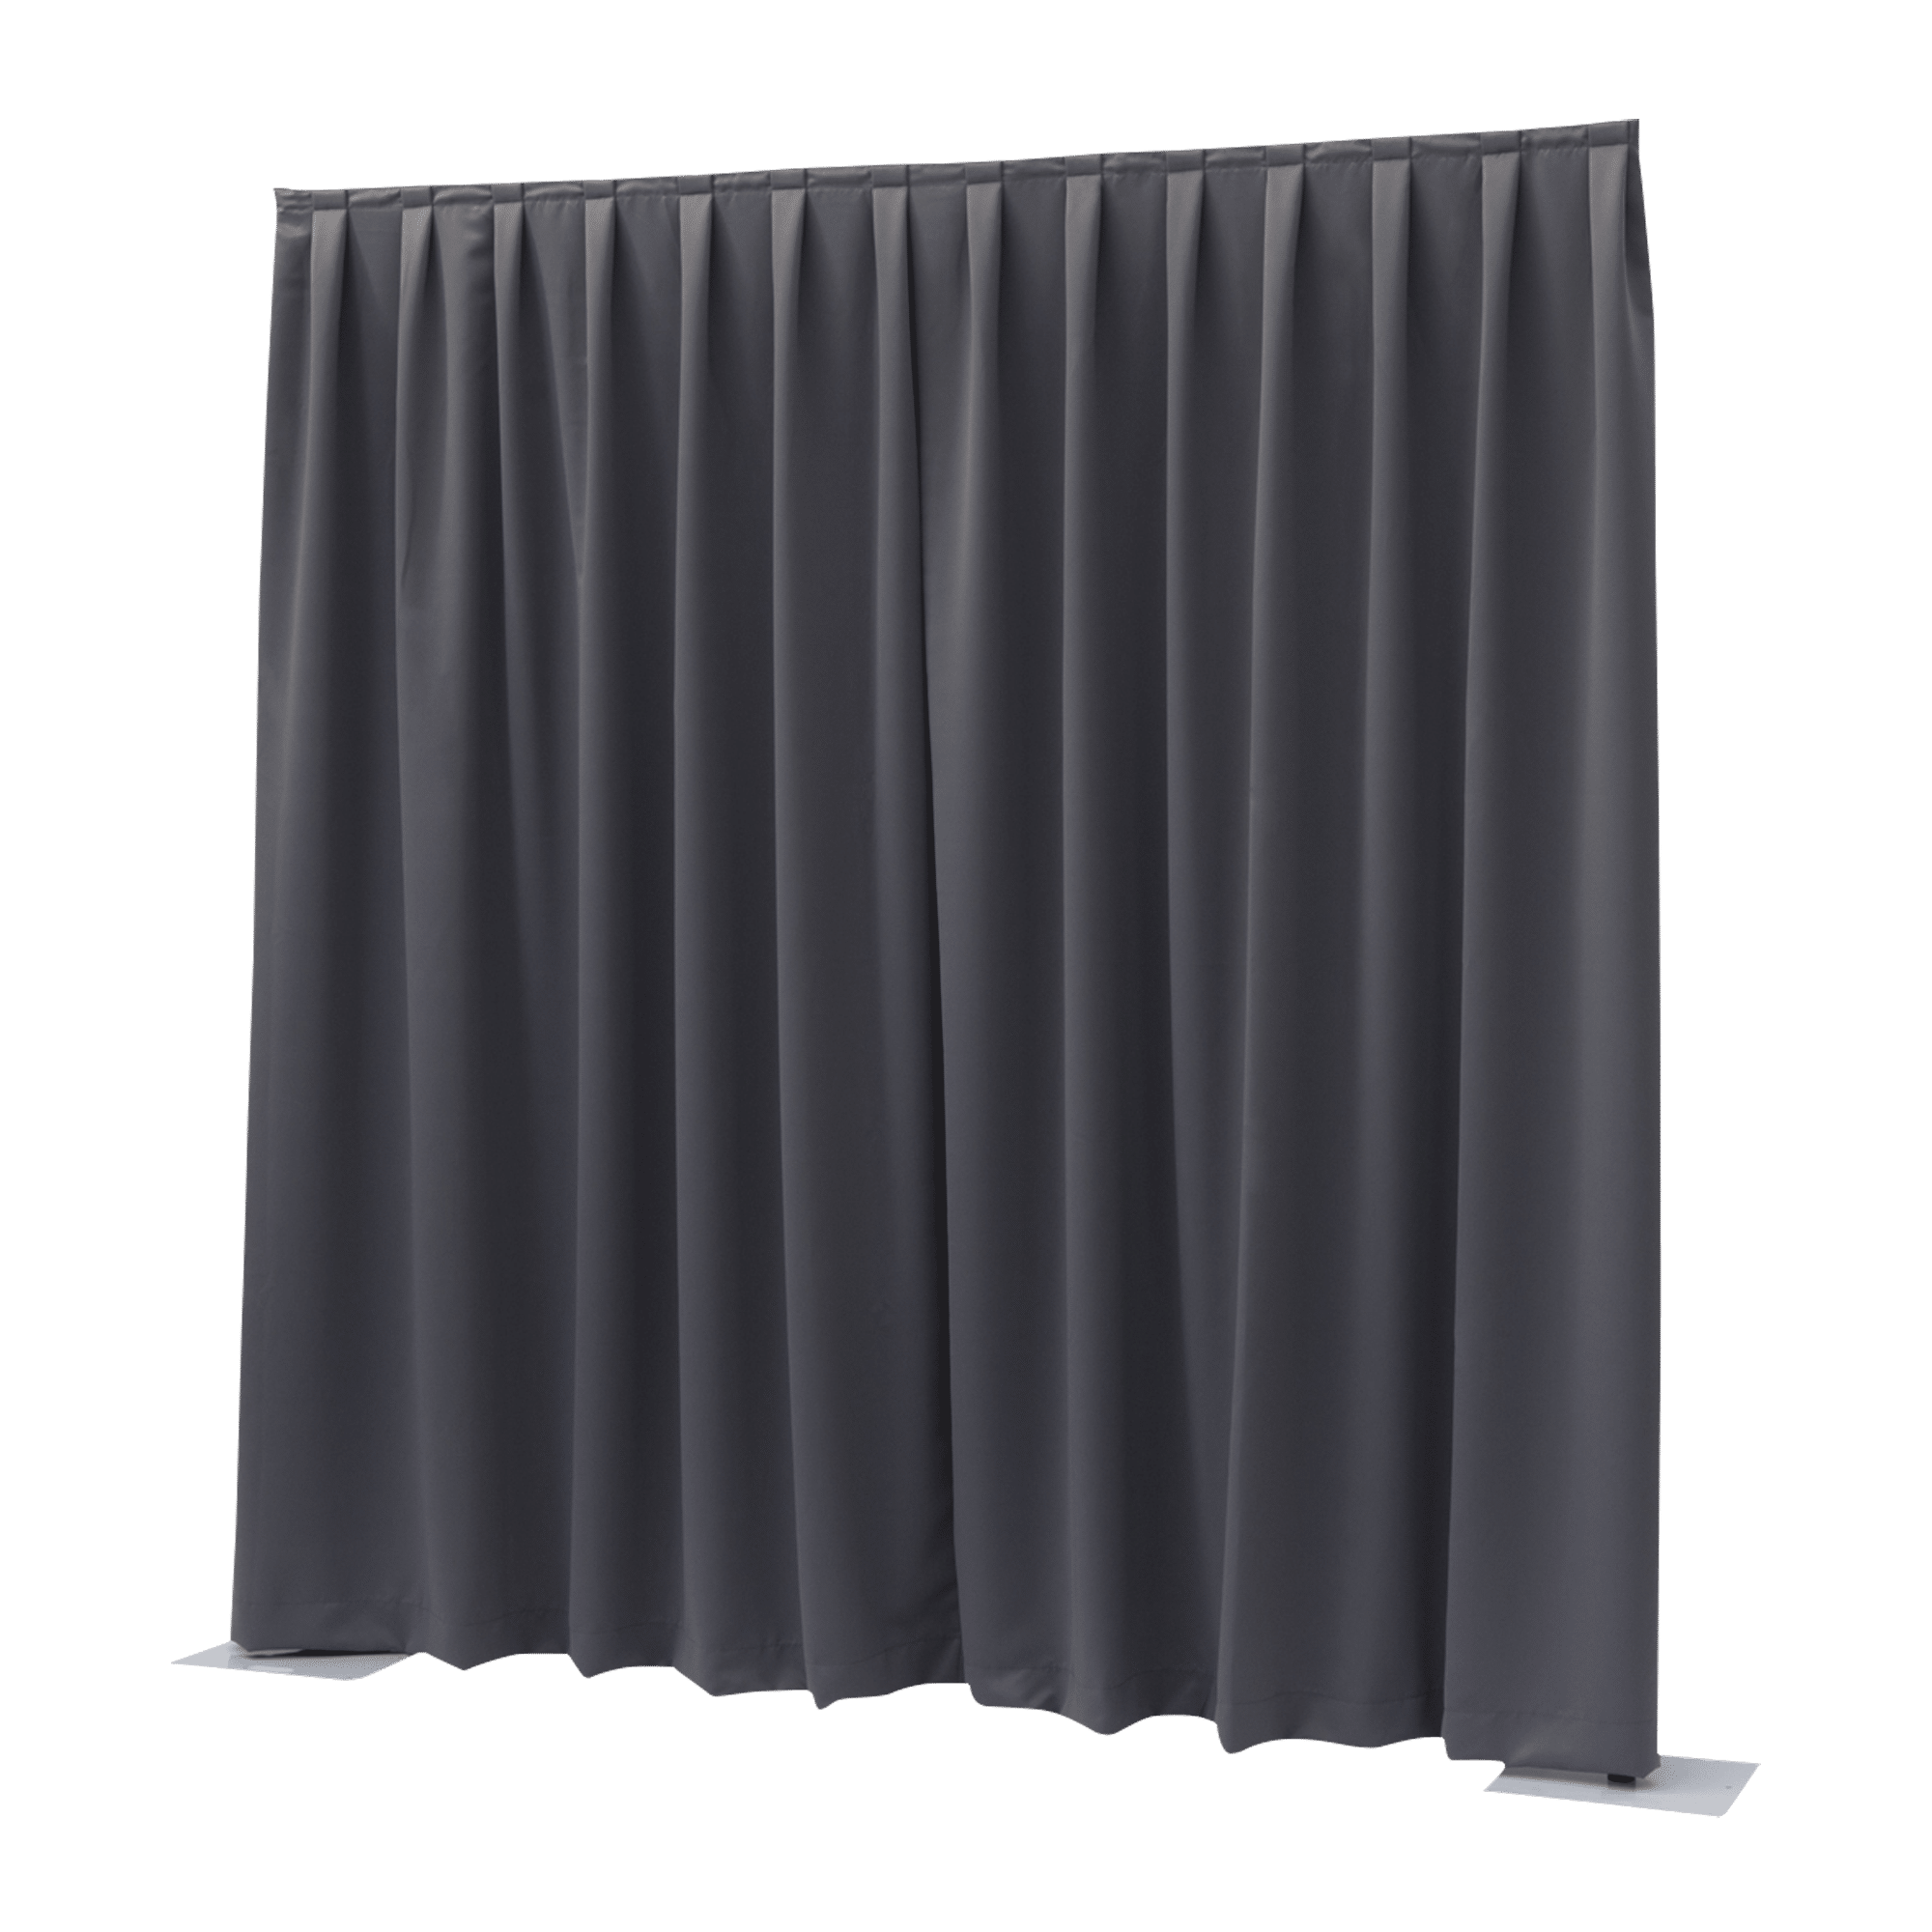 P&D Curtain Dimout 260 g/m² - Onlinediscowinkel.nl